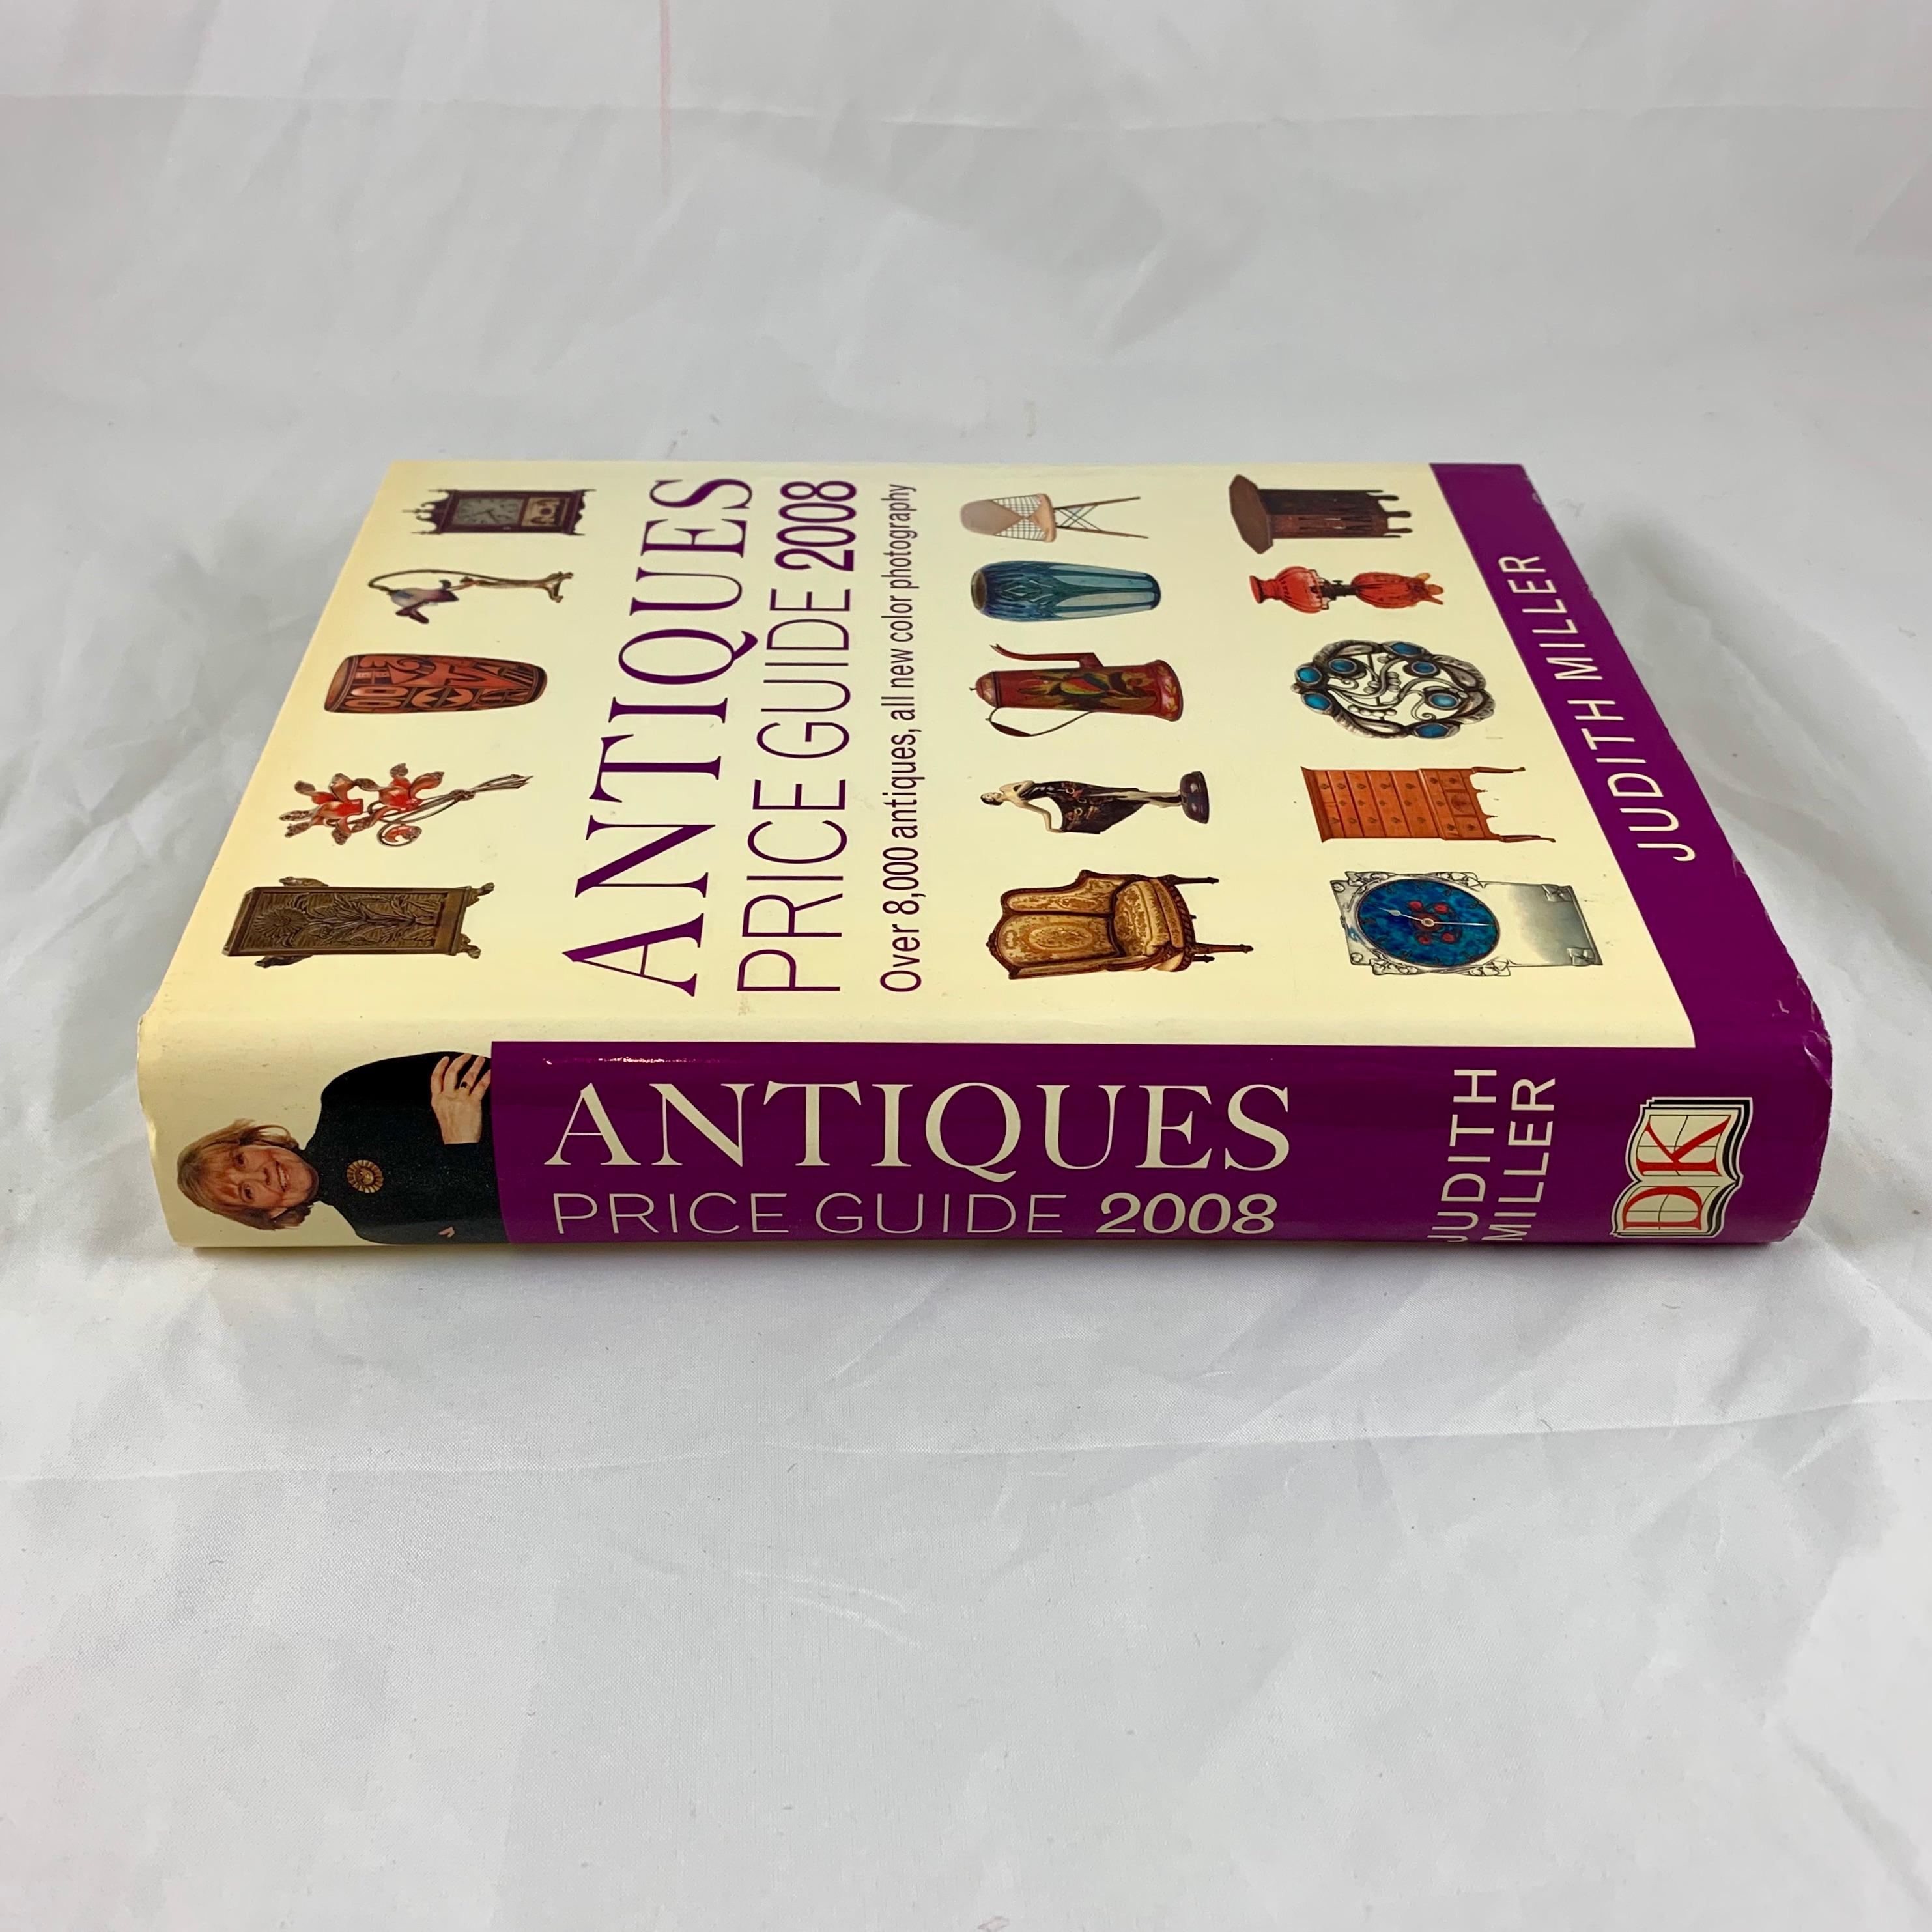 Un guide de prix relié pour les antiquités et les objets de collection, écrit par l'expert britannique en antiquités Judith Miller. 
 
L'Antiques Price Guide 2008 présente plus de 8 000 antiquités dans des photographies en couleur. 
Il s'agit